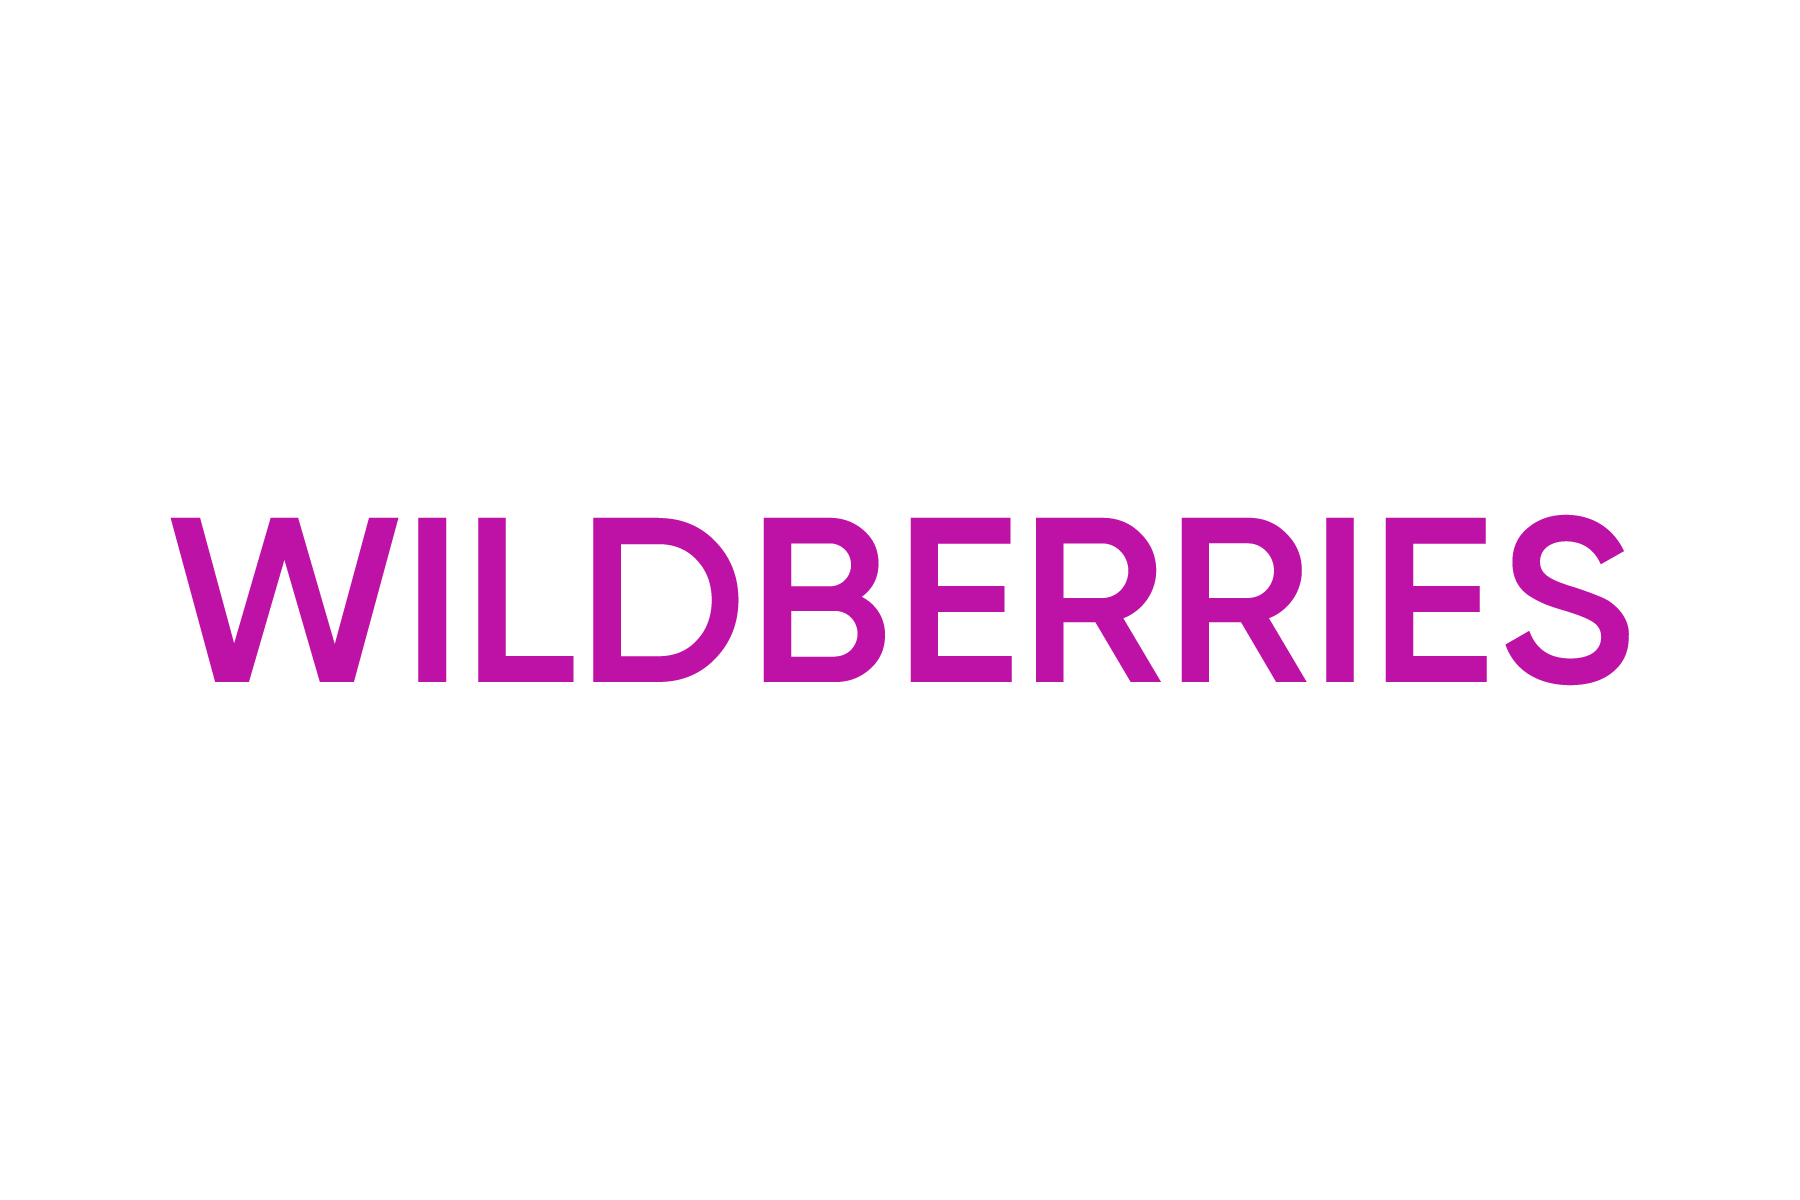 Wildberries. Wildberries лого. Надпись Wildberries. Логотип ва. Флаеры вайлдберриз